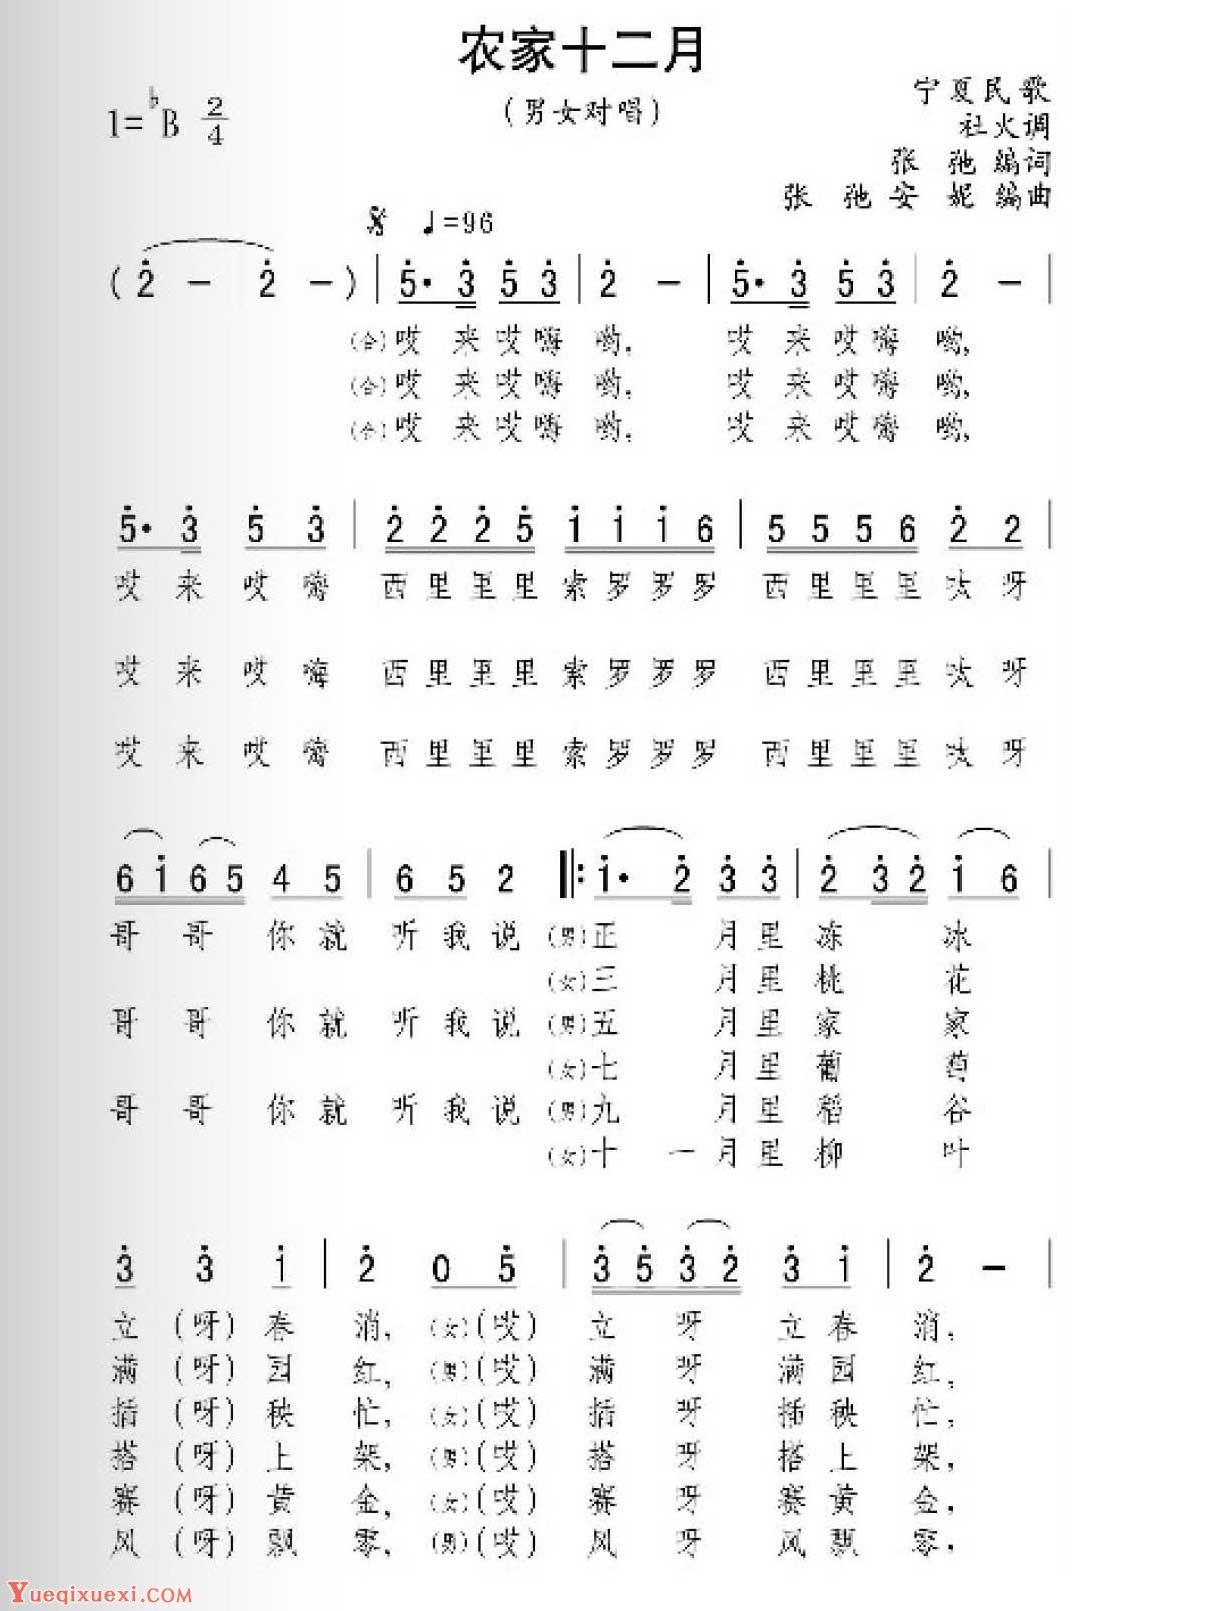 描写宁夏的歌曲《农家十二月》男女对唱